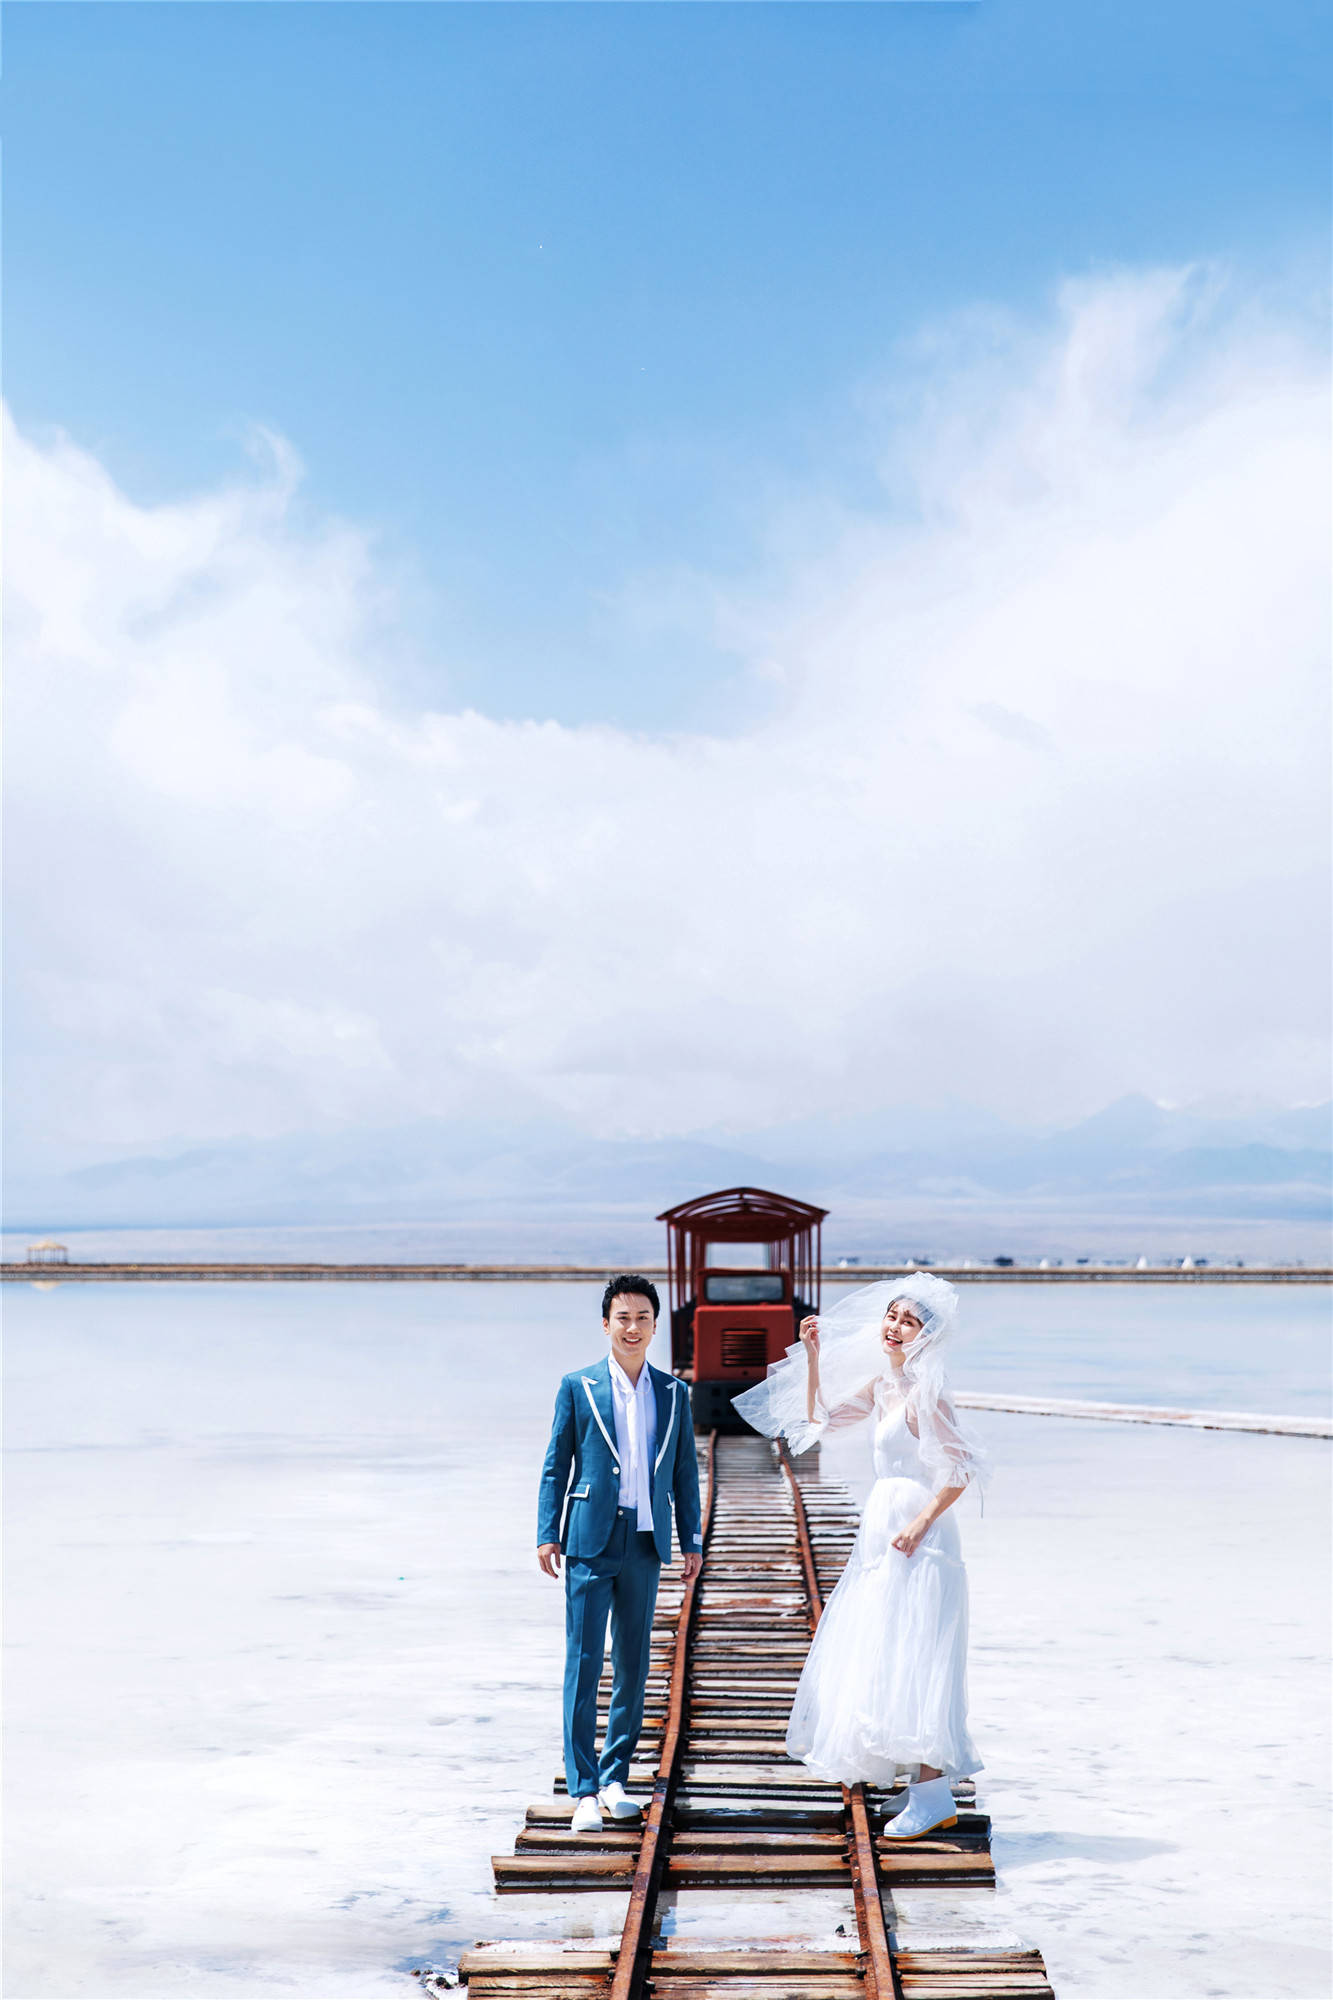 茶卡盐湖拍婚纱照价格_茶卡盐湖天空之镜图片